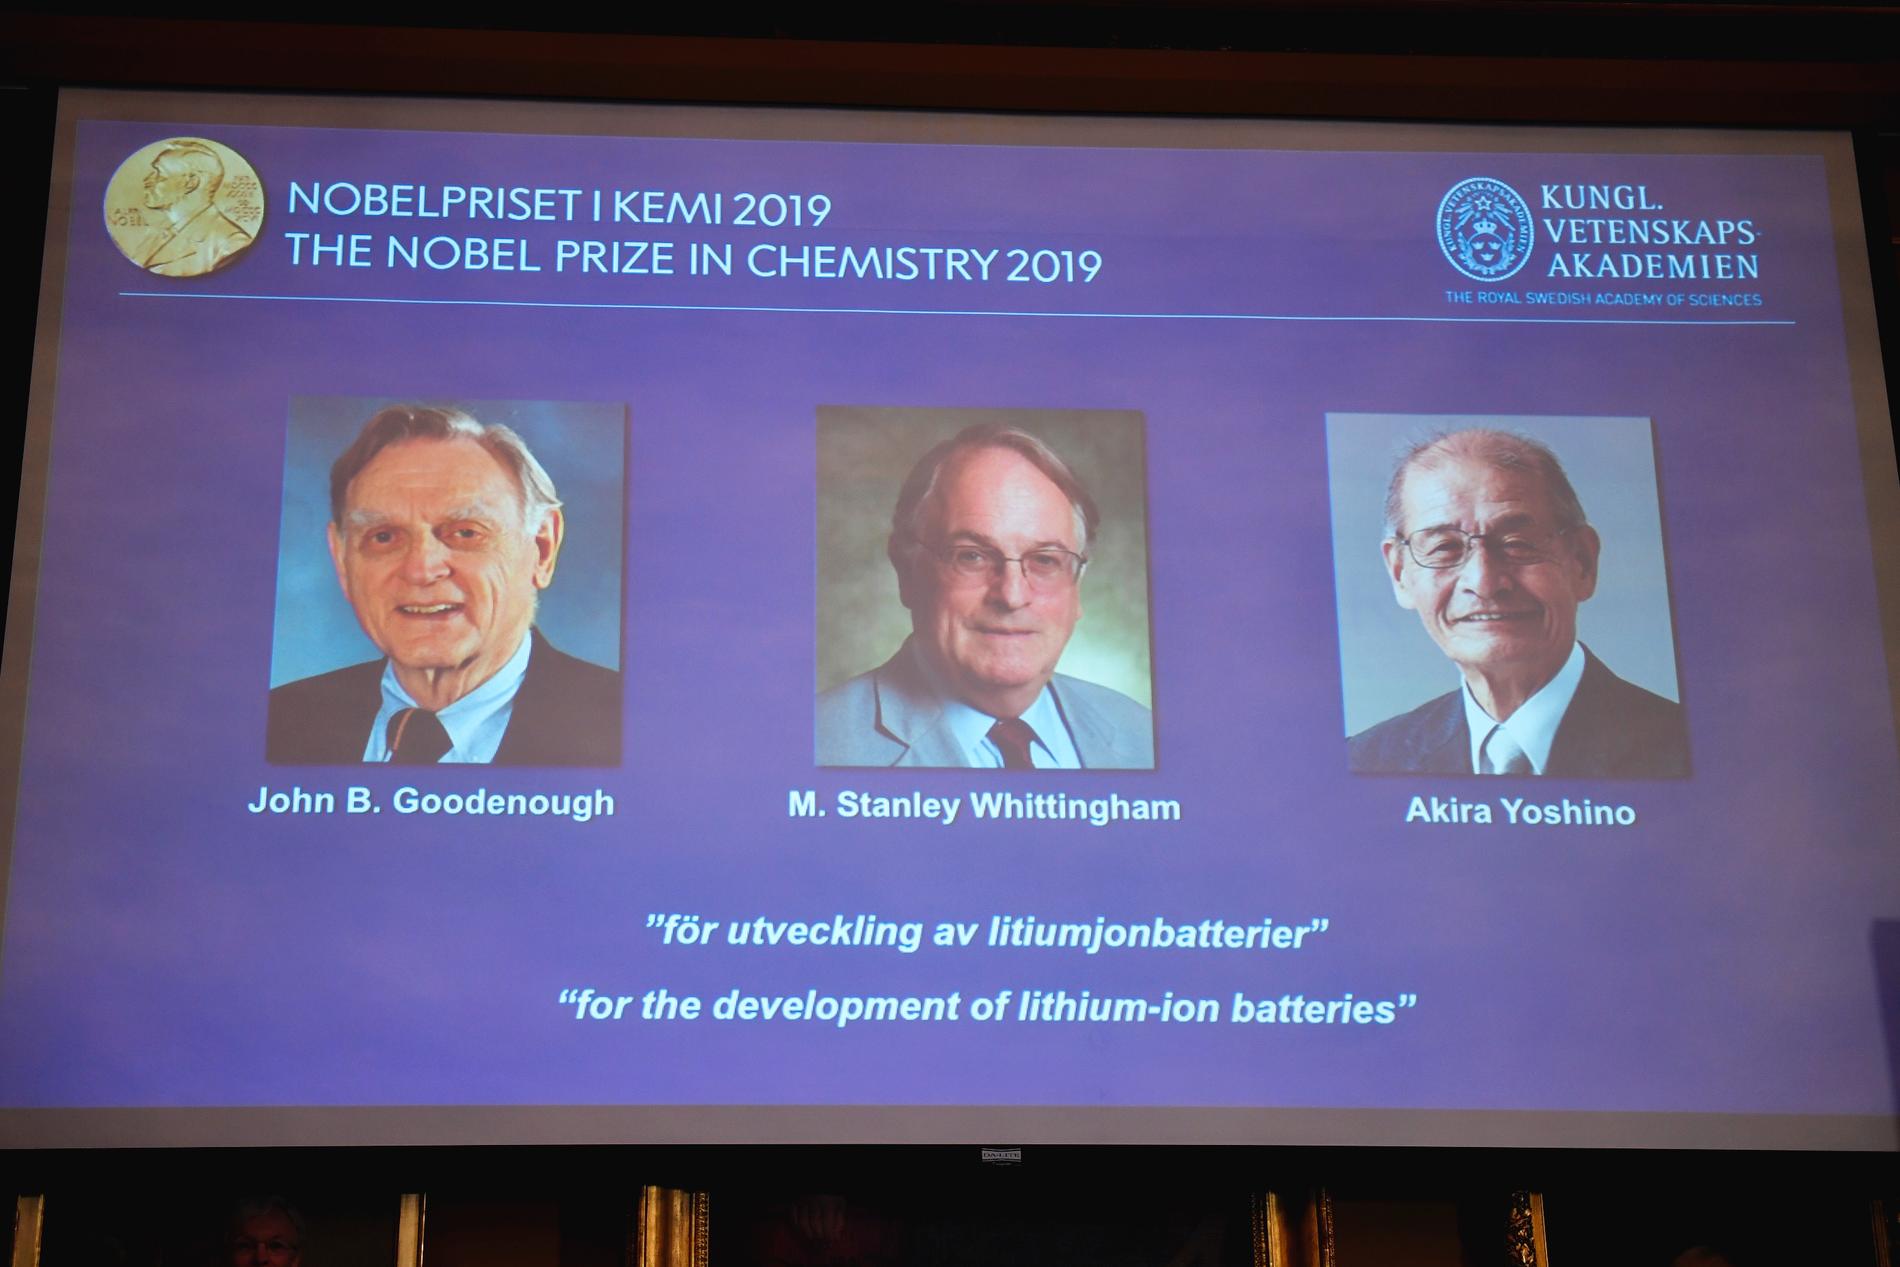 Kungl. Vetenskapsakademien har beslutat utdela Nobelpriset i kemi 2019 till John B. Goodenough, M. Stanley Whittingham, och Akira Yoshino för utvecklingen av litiumjonbatteriet. 